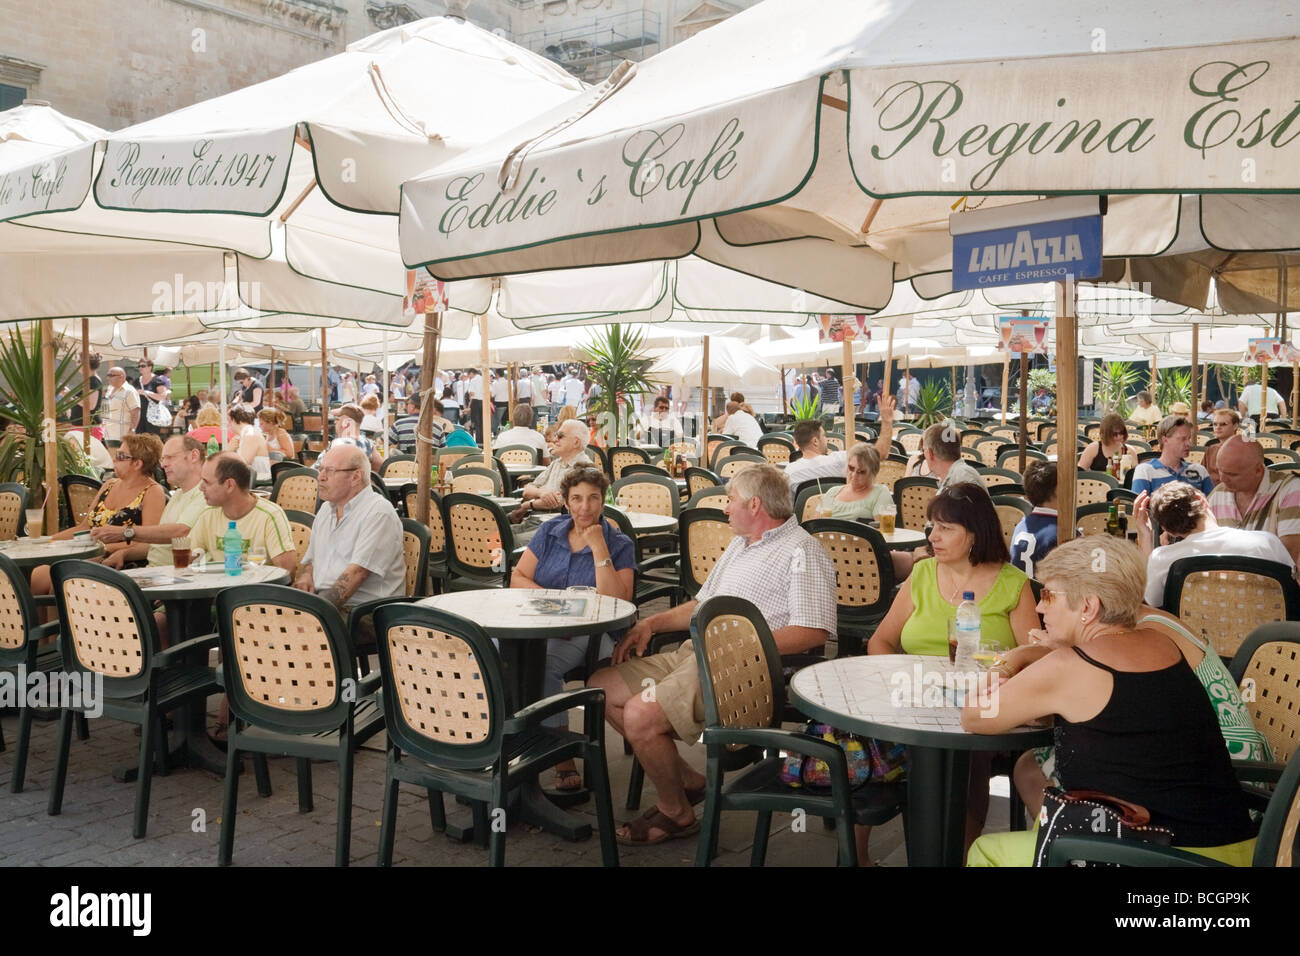 Tourists eating alfresco in Republic Square, Valletta Malta Stock Photo